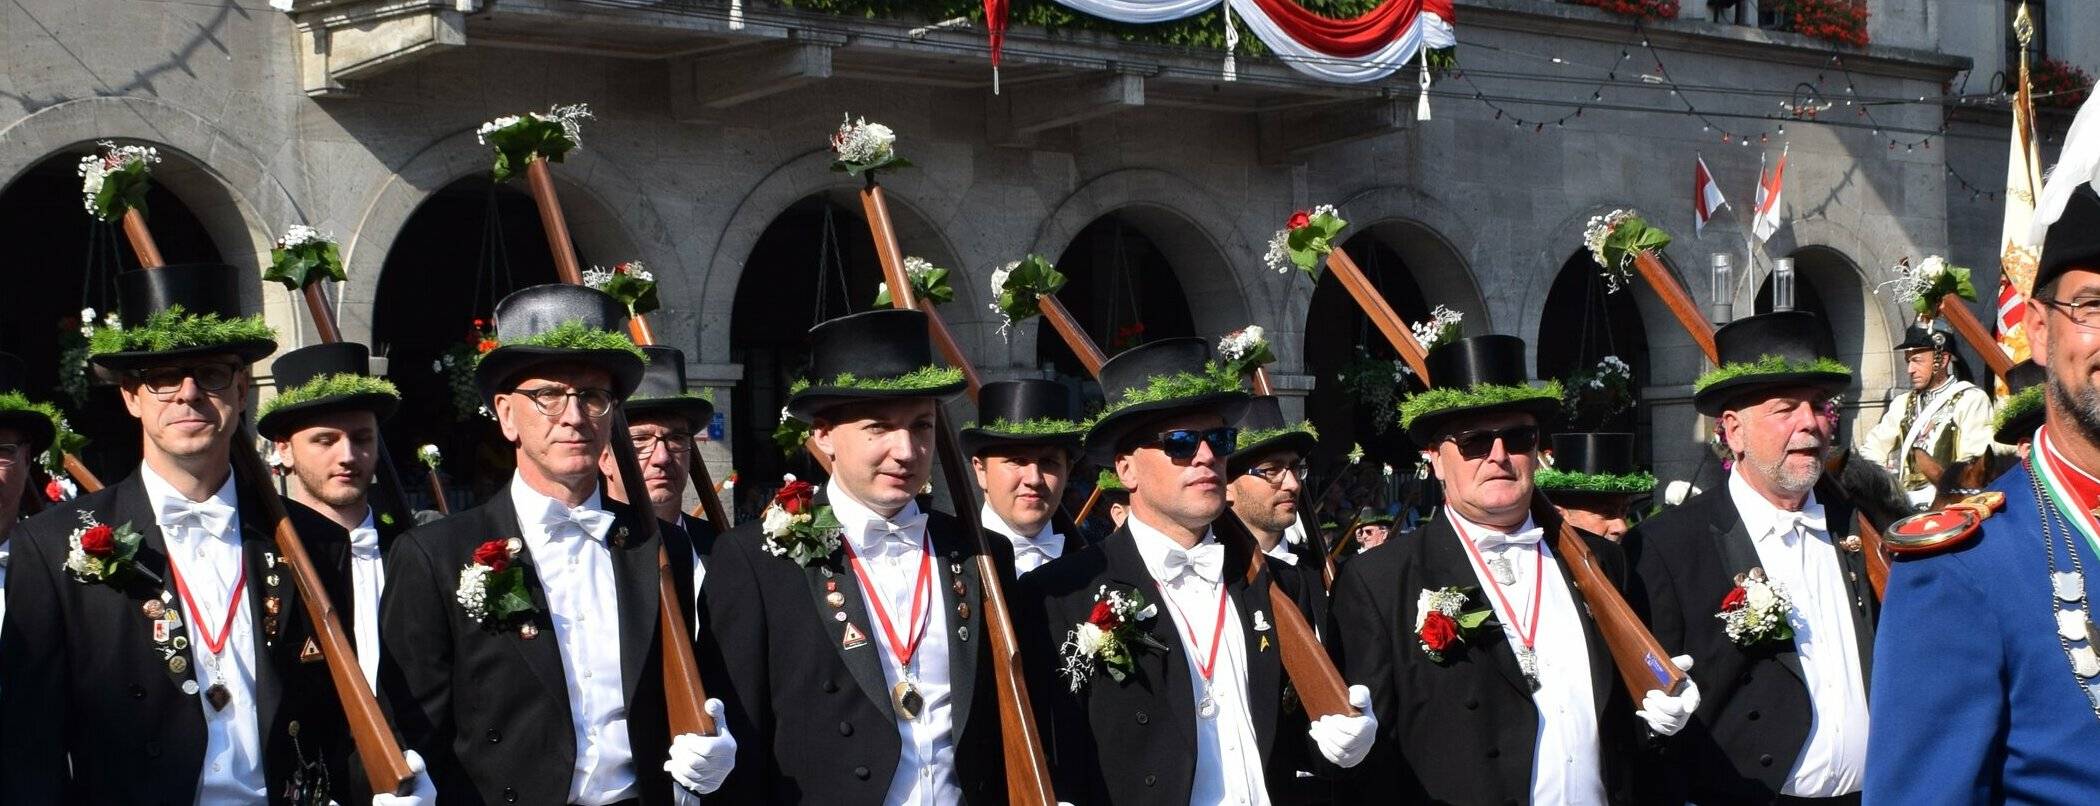 Endlich wieder Schützenfest feiern wie 2019